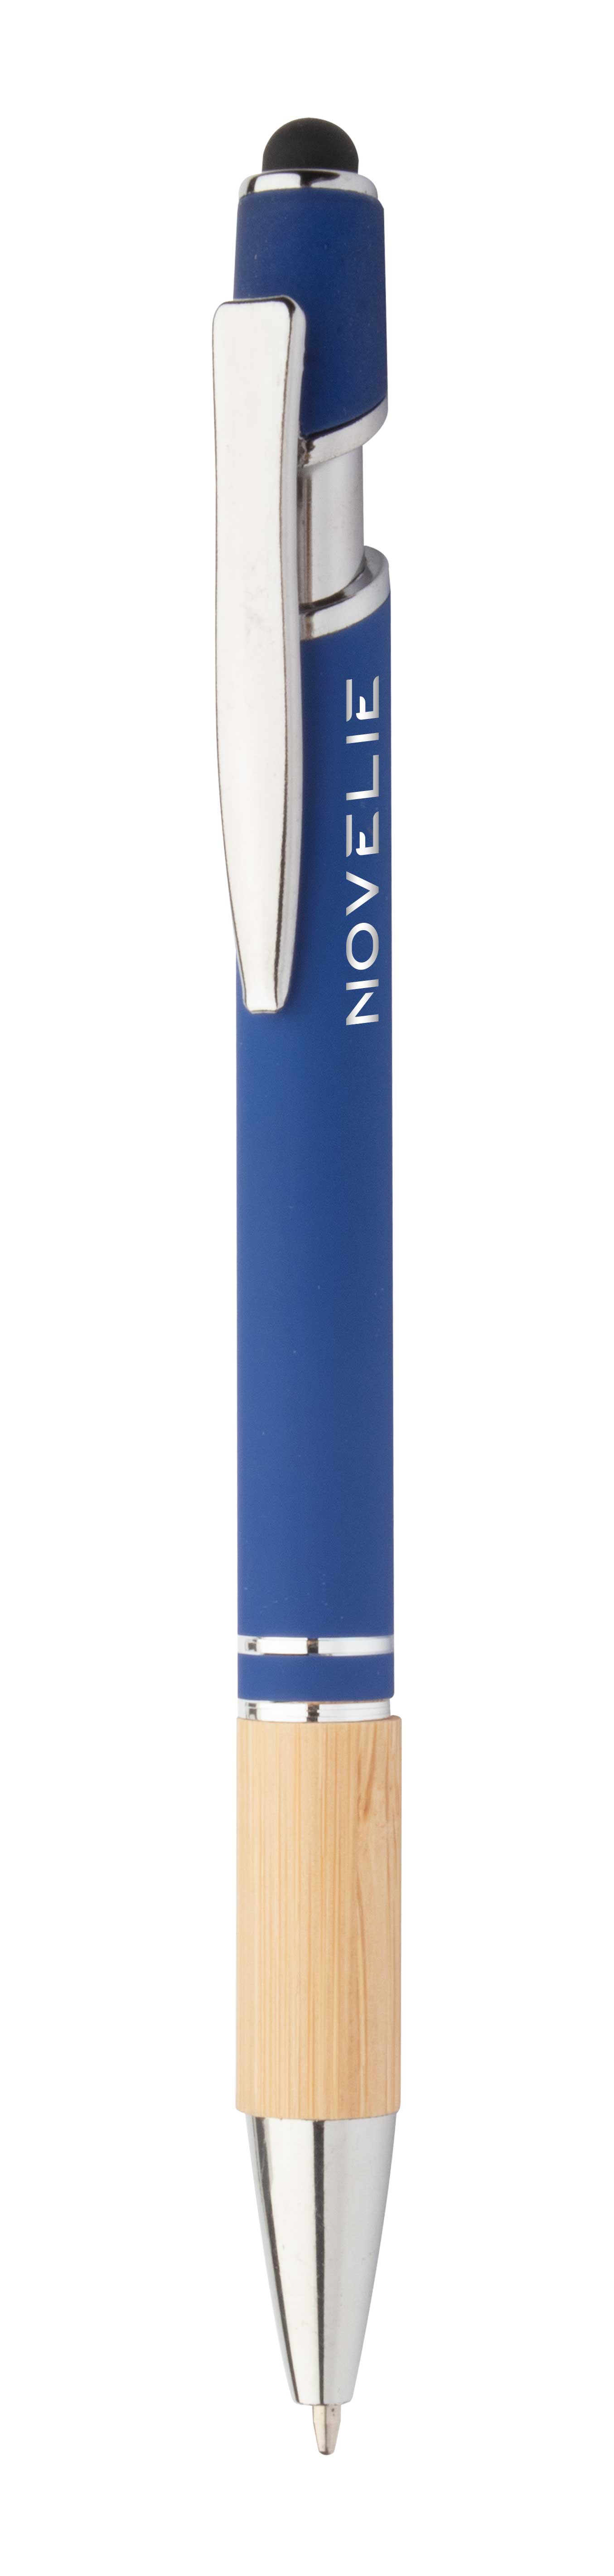 Bonnel touch ballpoint pen - blau